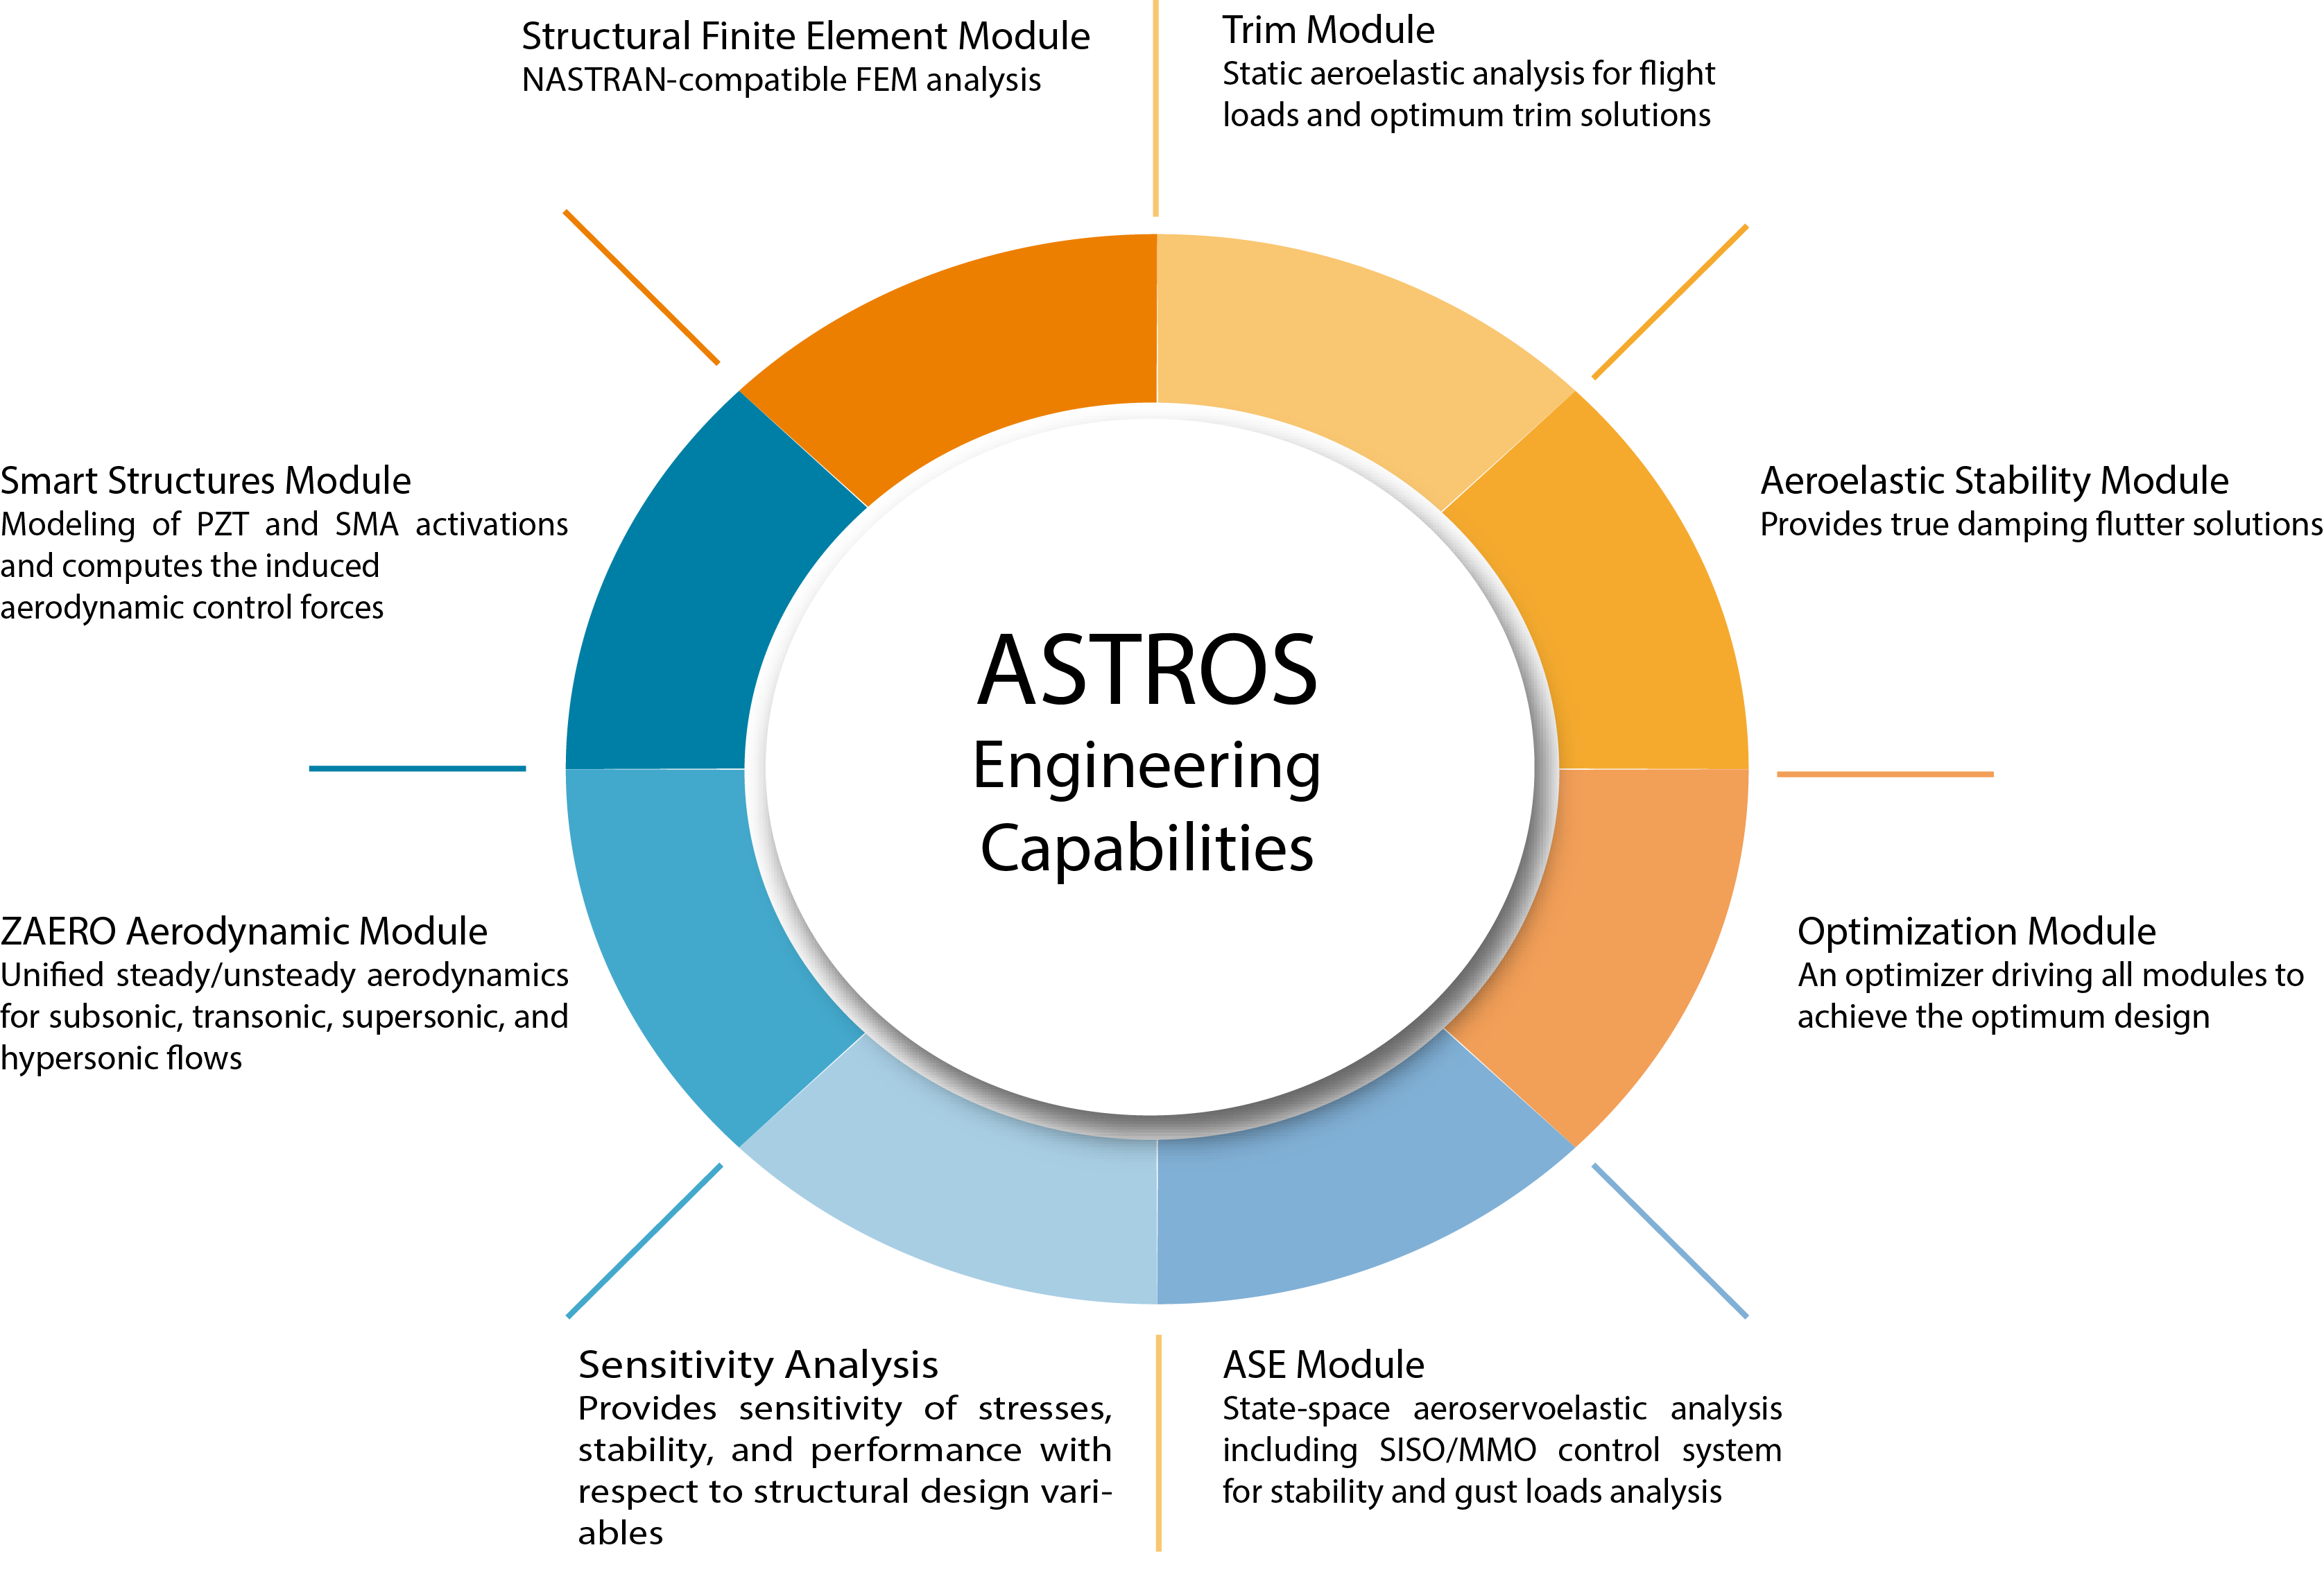 ASTROS Engineering Capablities